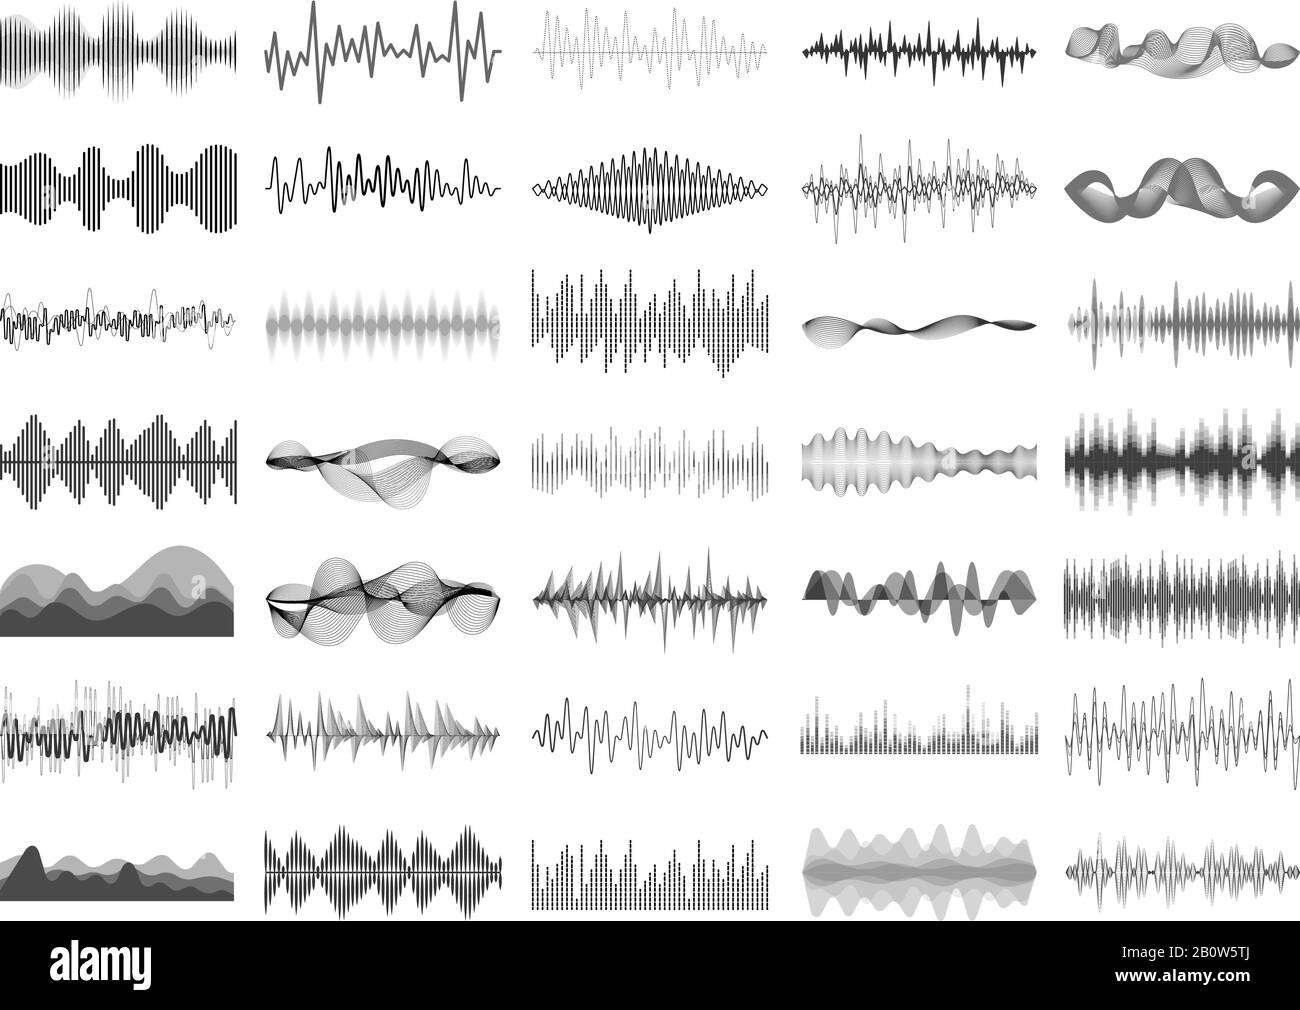 Digital Equalizer-Bedienfeld für Sound Wave und Musik. Darstellung des Vektors zur Sprachvisualisierung von Schallwellen-Amplitude-BONIC Beat-Impulsen Stock Vektor